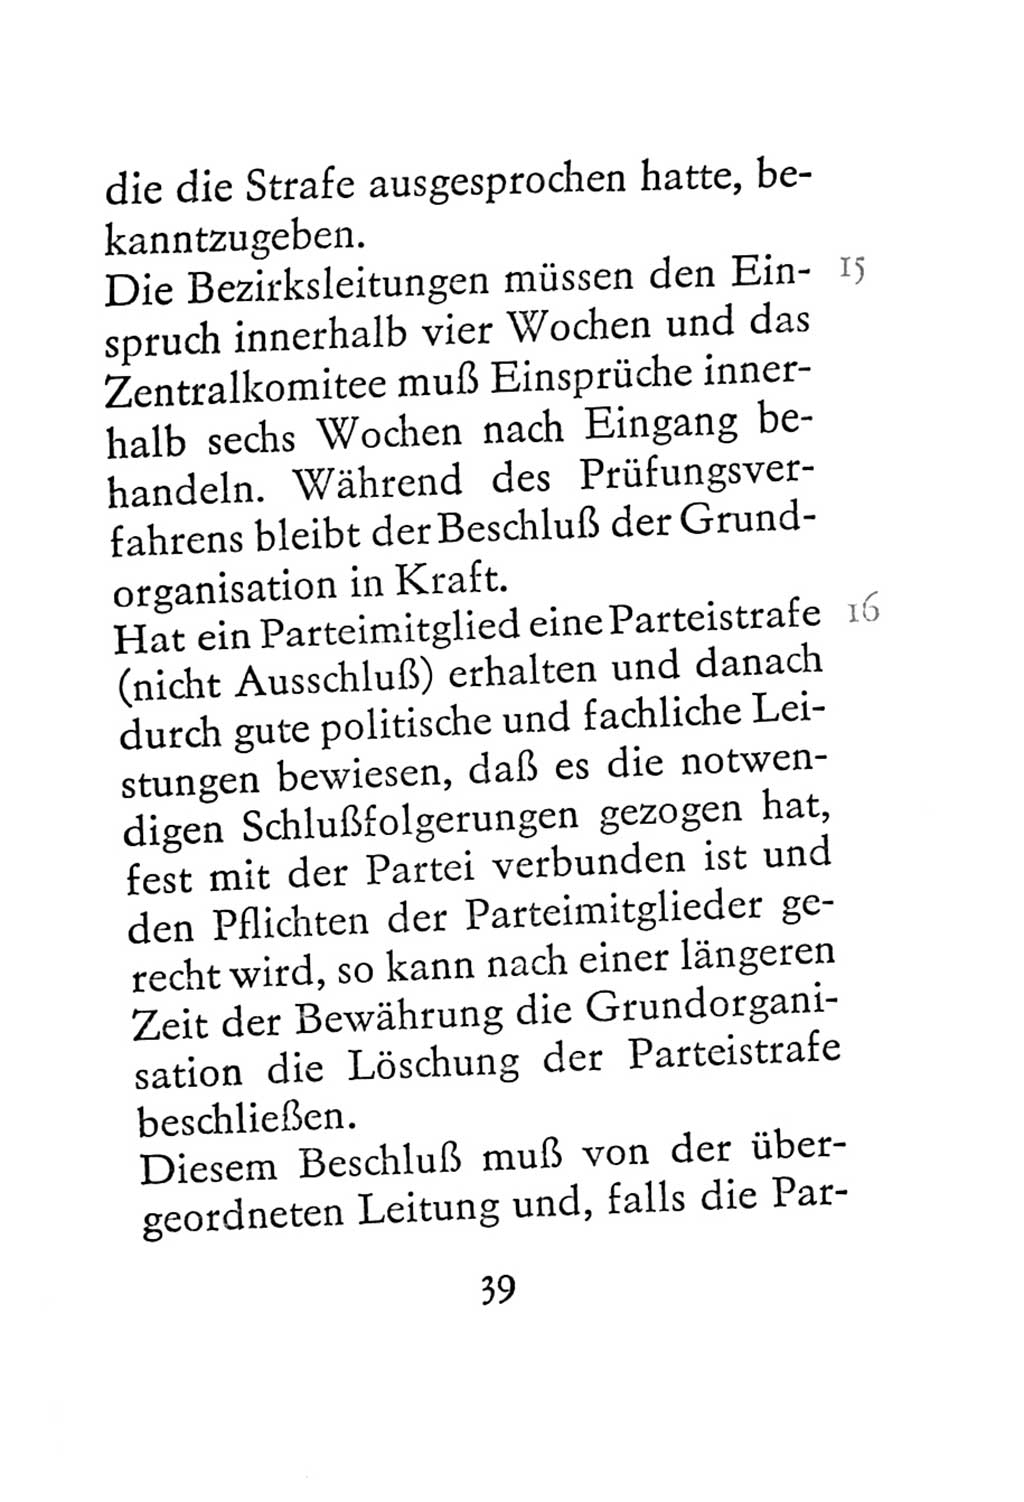 Statut der Sozialistischen Einheitspartei Deutschlands (SED) 1967, Seite 39 (St. SED DDR 1967, S. 39)